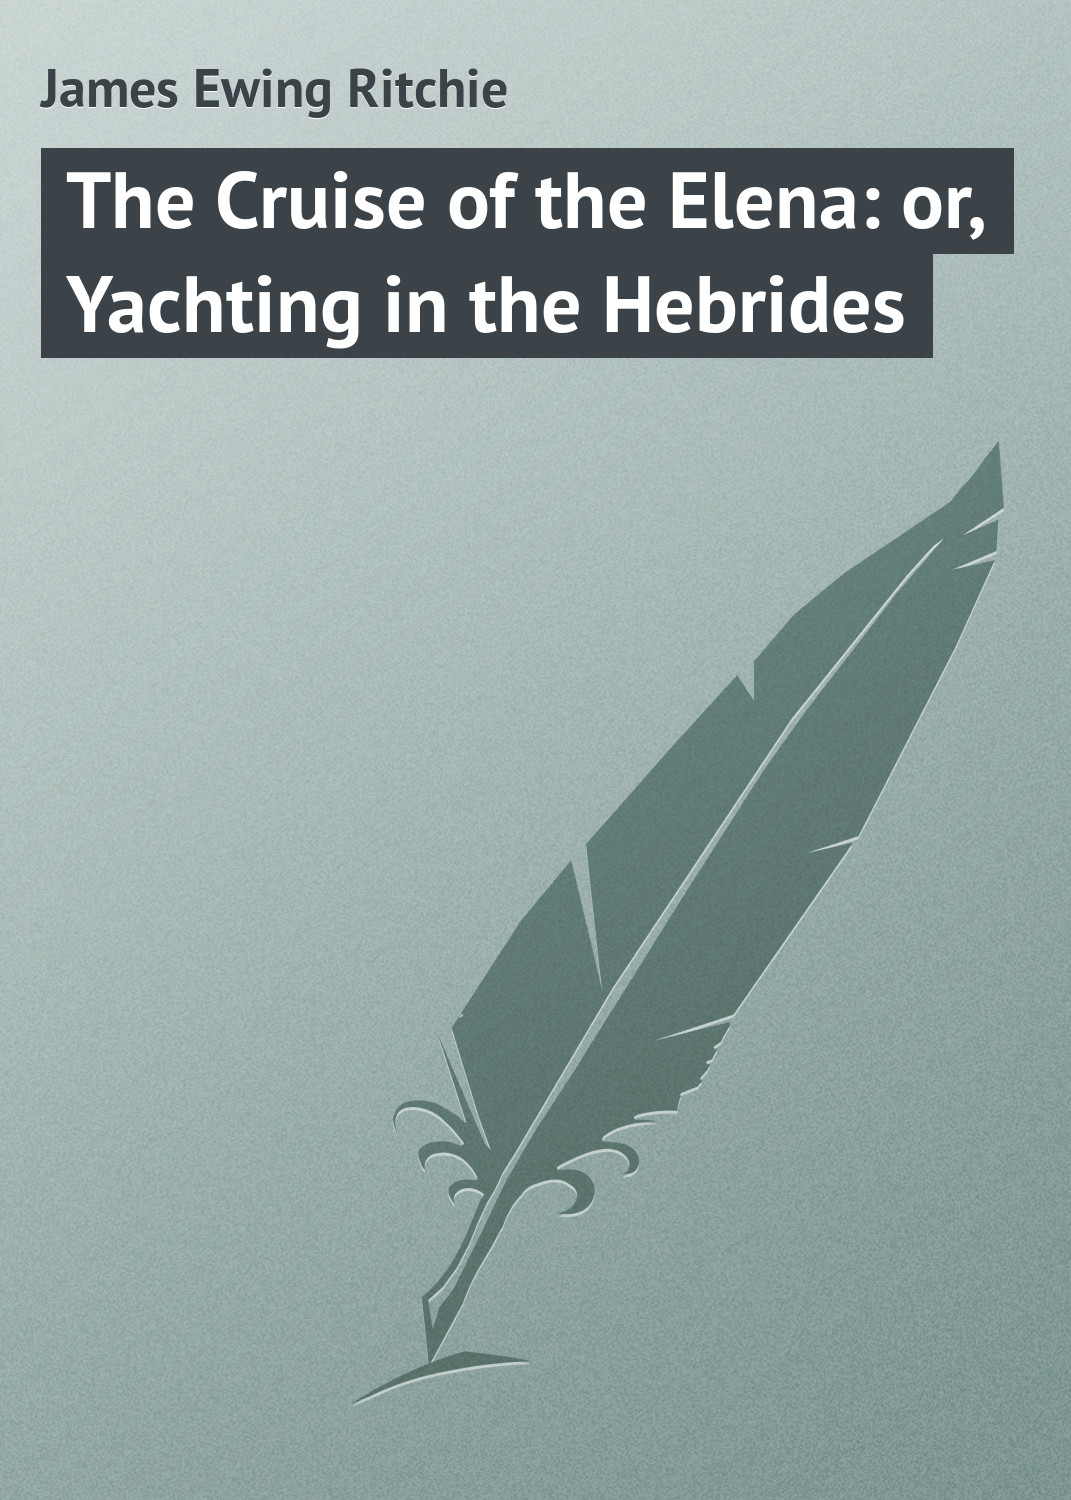 Книга The Cruise of the Elena: or, Yachting in the Hebrides из серии , созданная James Ritchie, может относится к жанру Зарубежная классика. Стоимость электронной книги The Cruise of the Elena: or, Yachting in the Hebrides с идентификатором 23146875 составляет 5.99 руб.